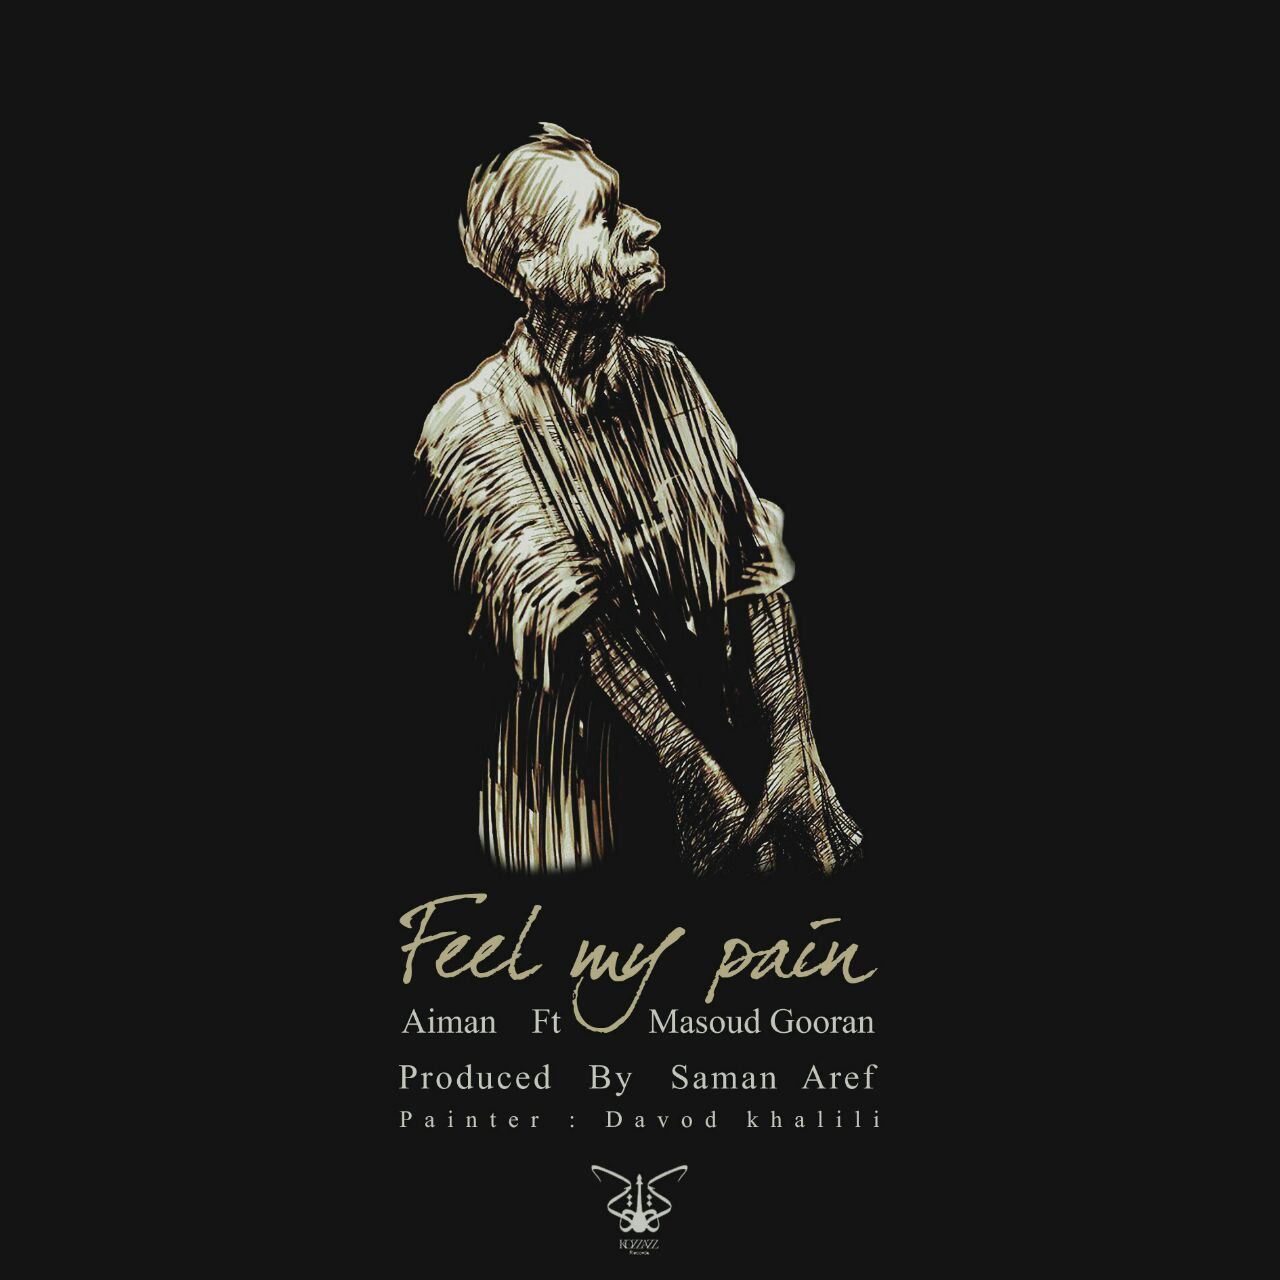 دانلود موزیک جدید و بسیار زیبای آیمان و مسعود گوران به نام Feel My Pain